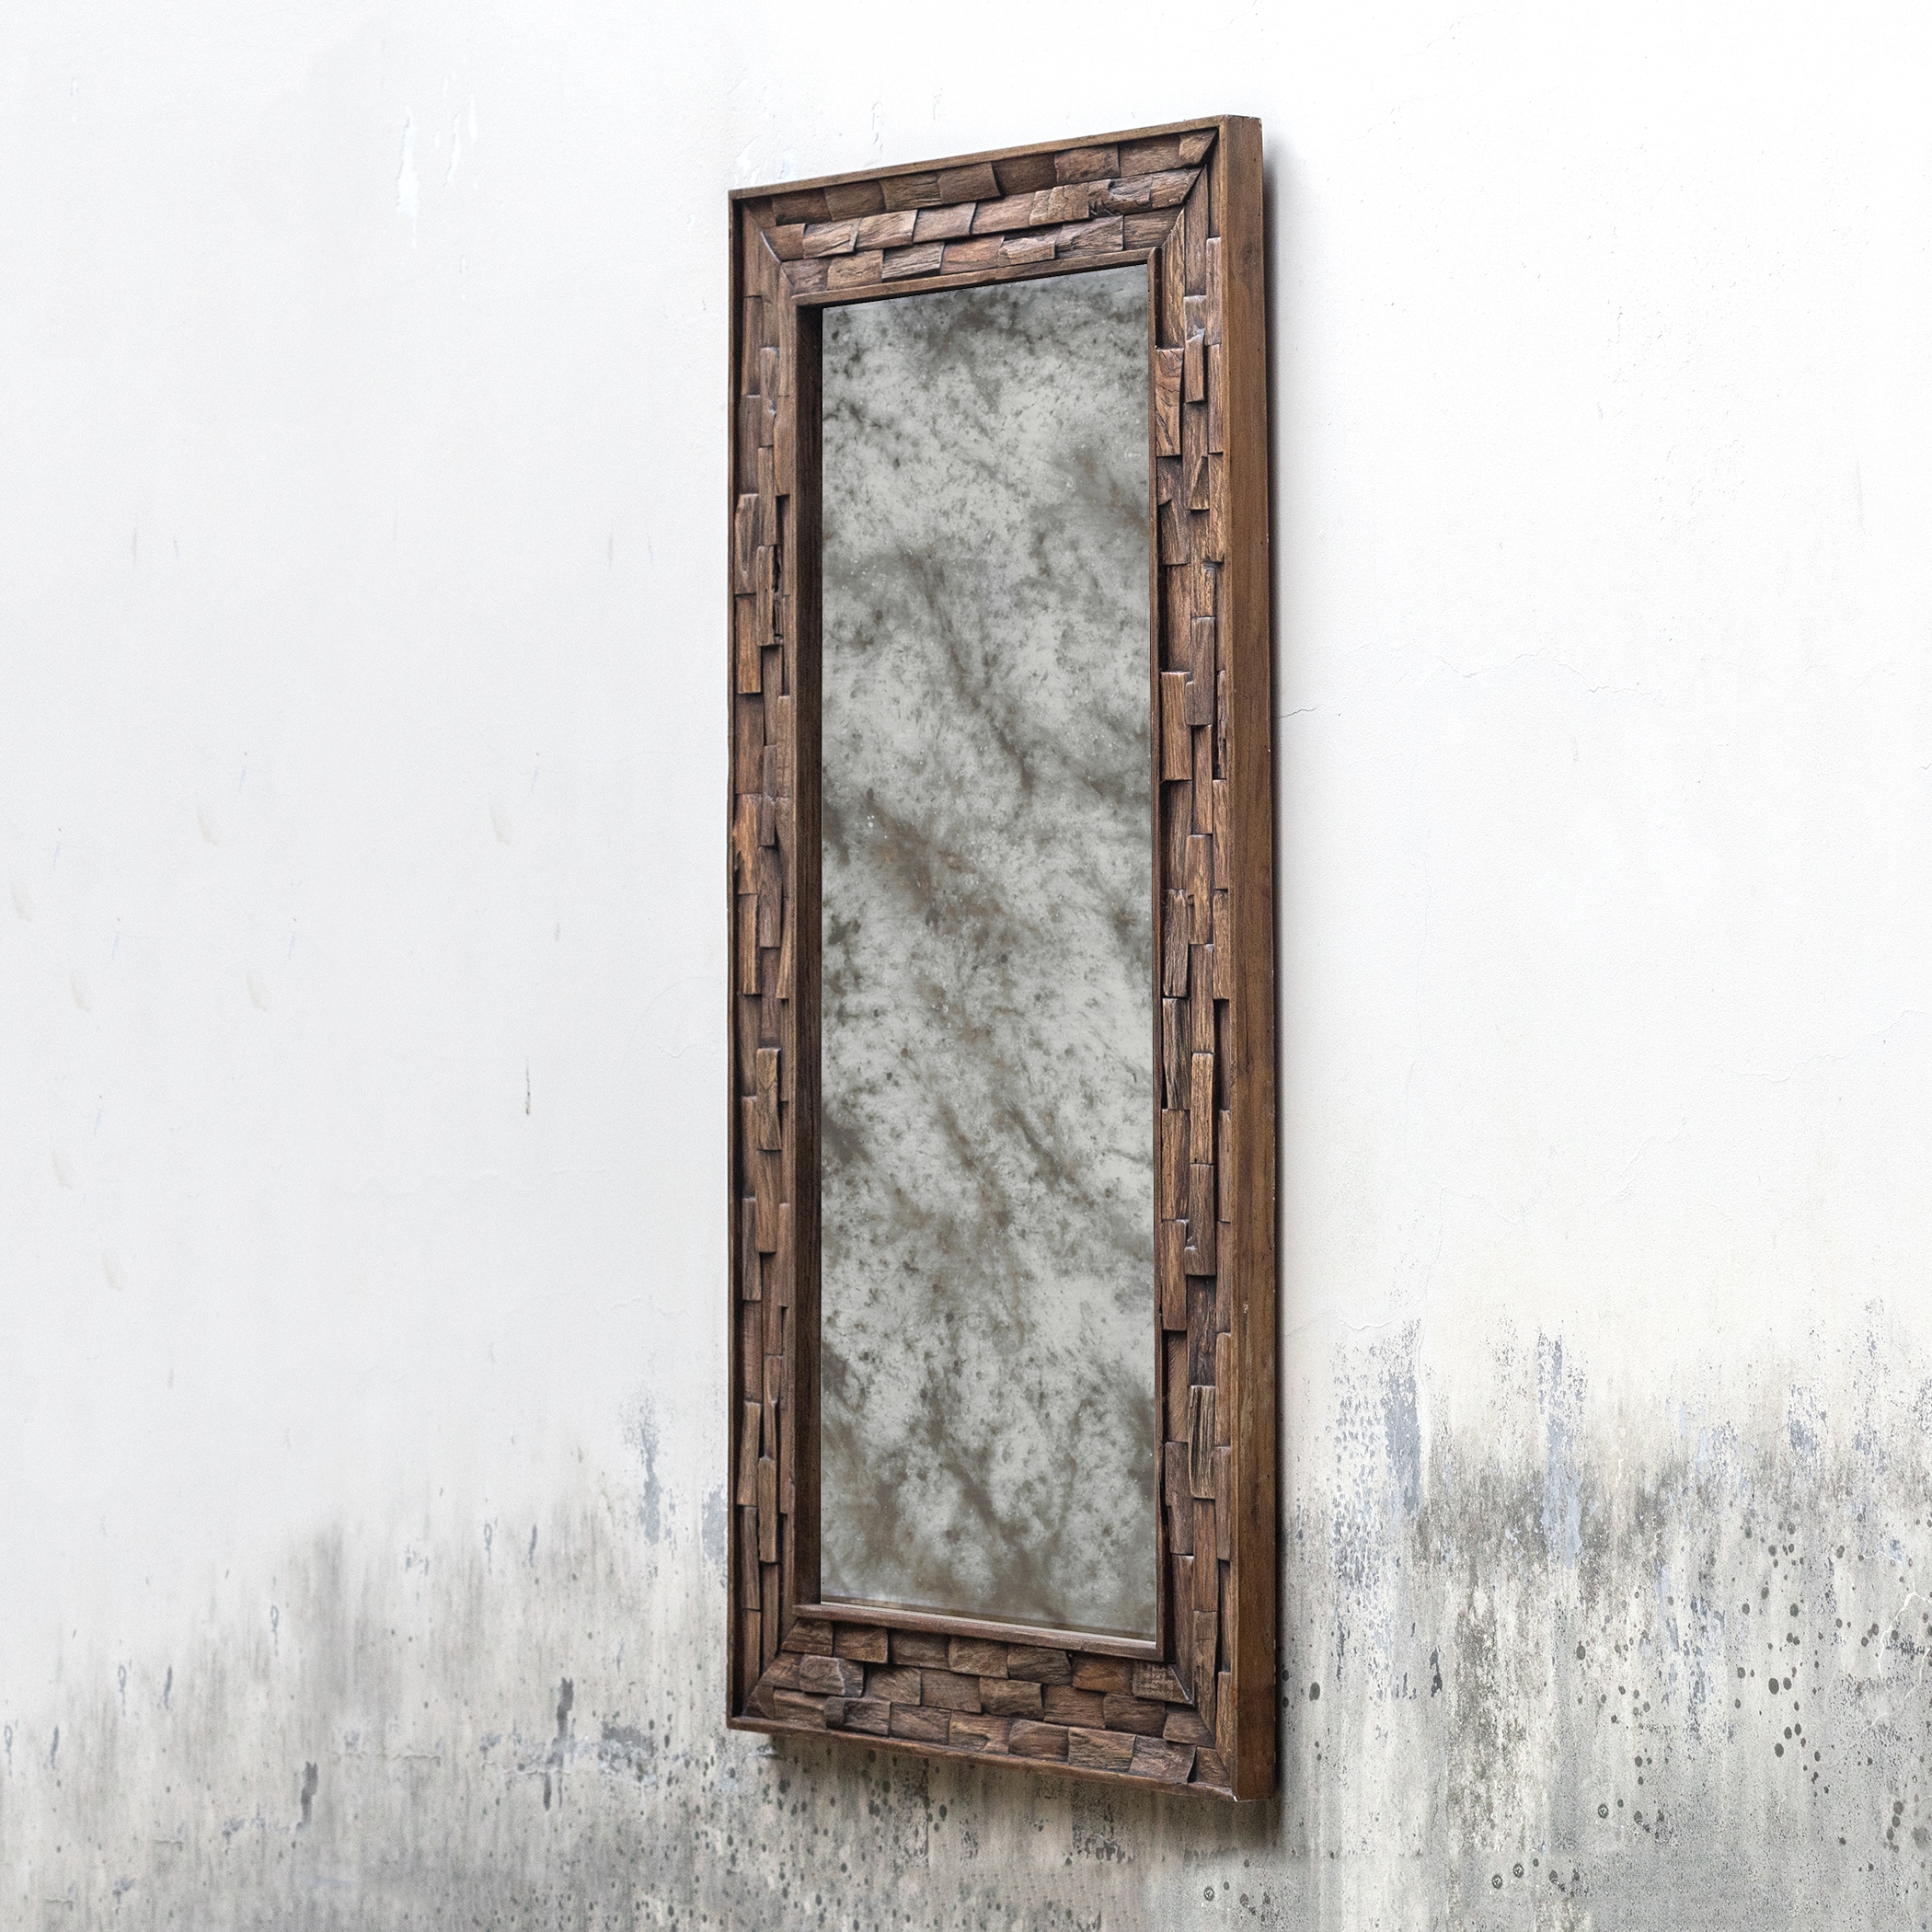 Damon Mosaic Wood Mirror - Image 2